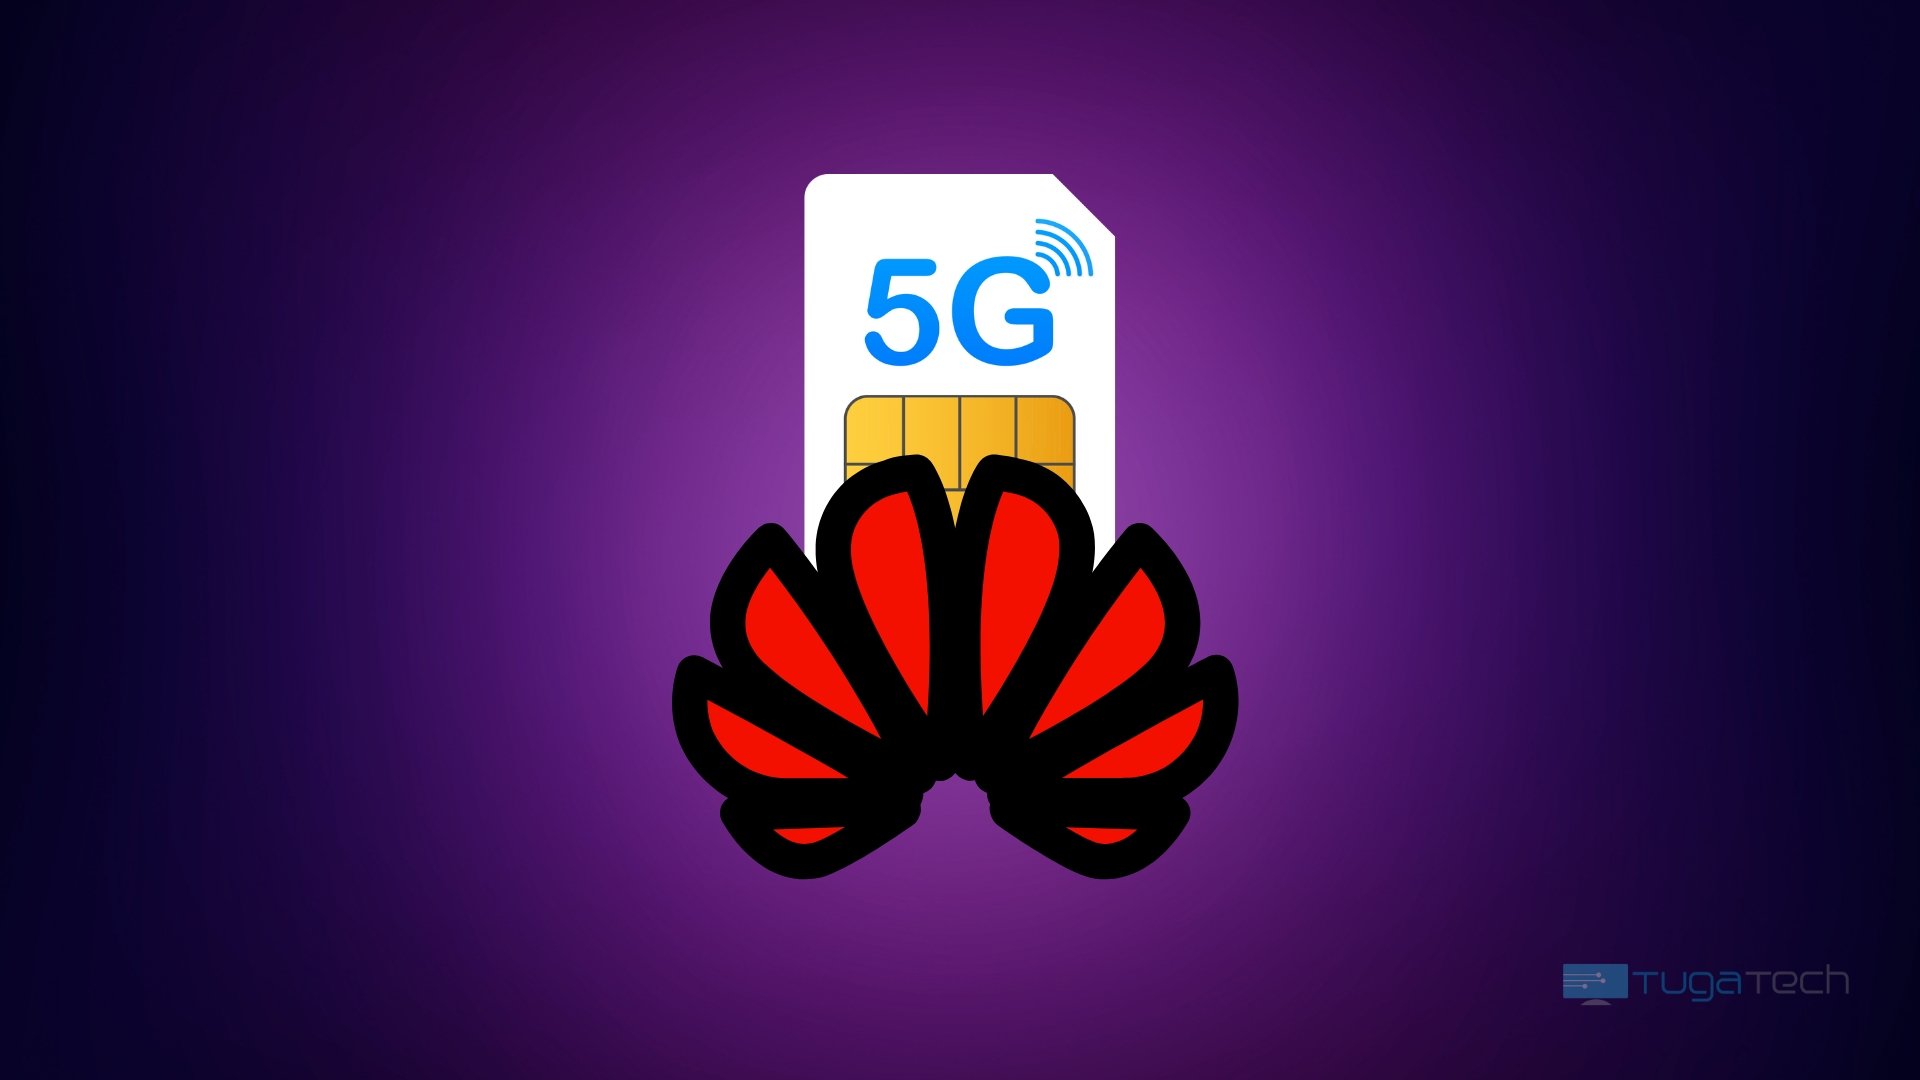 Logo da Huawei com cartão 5G